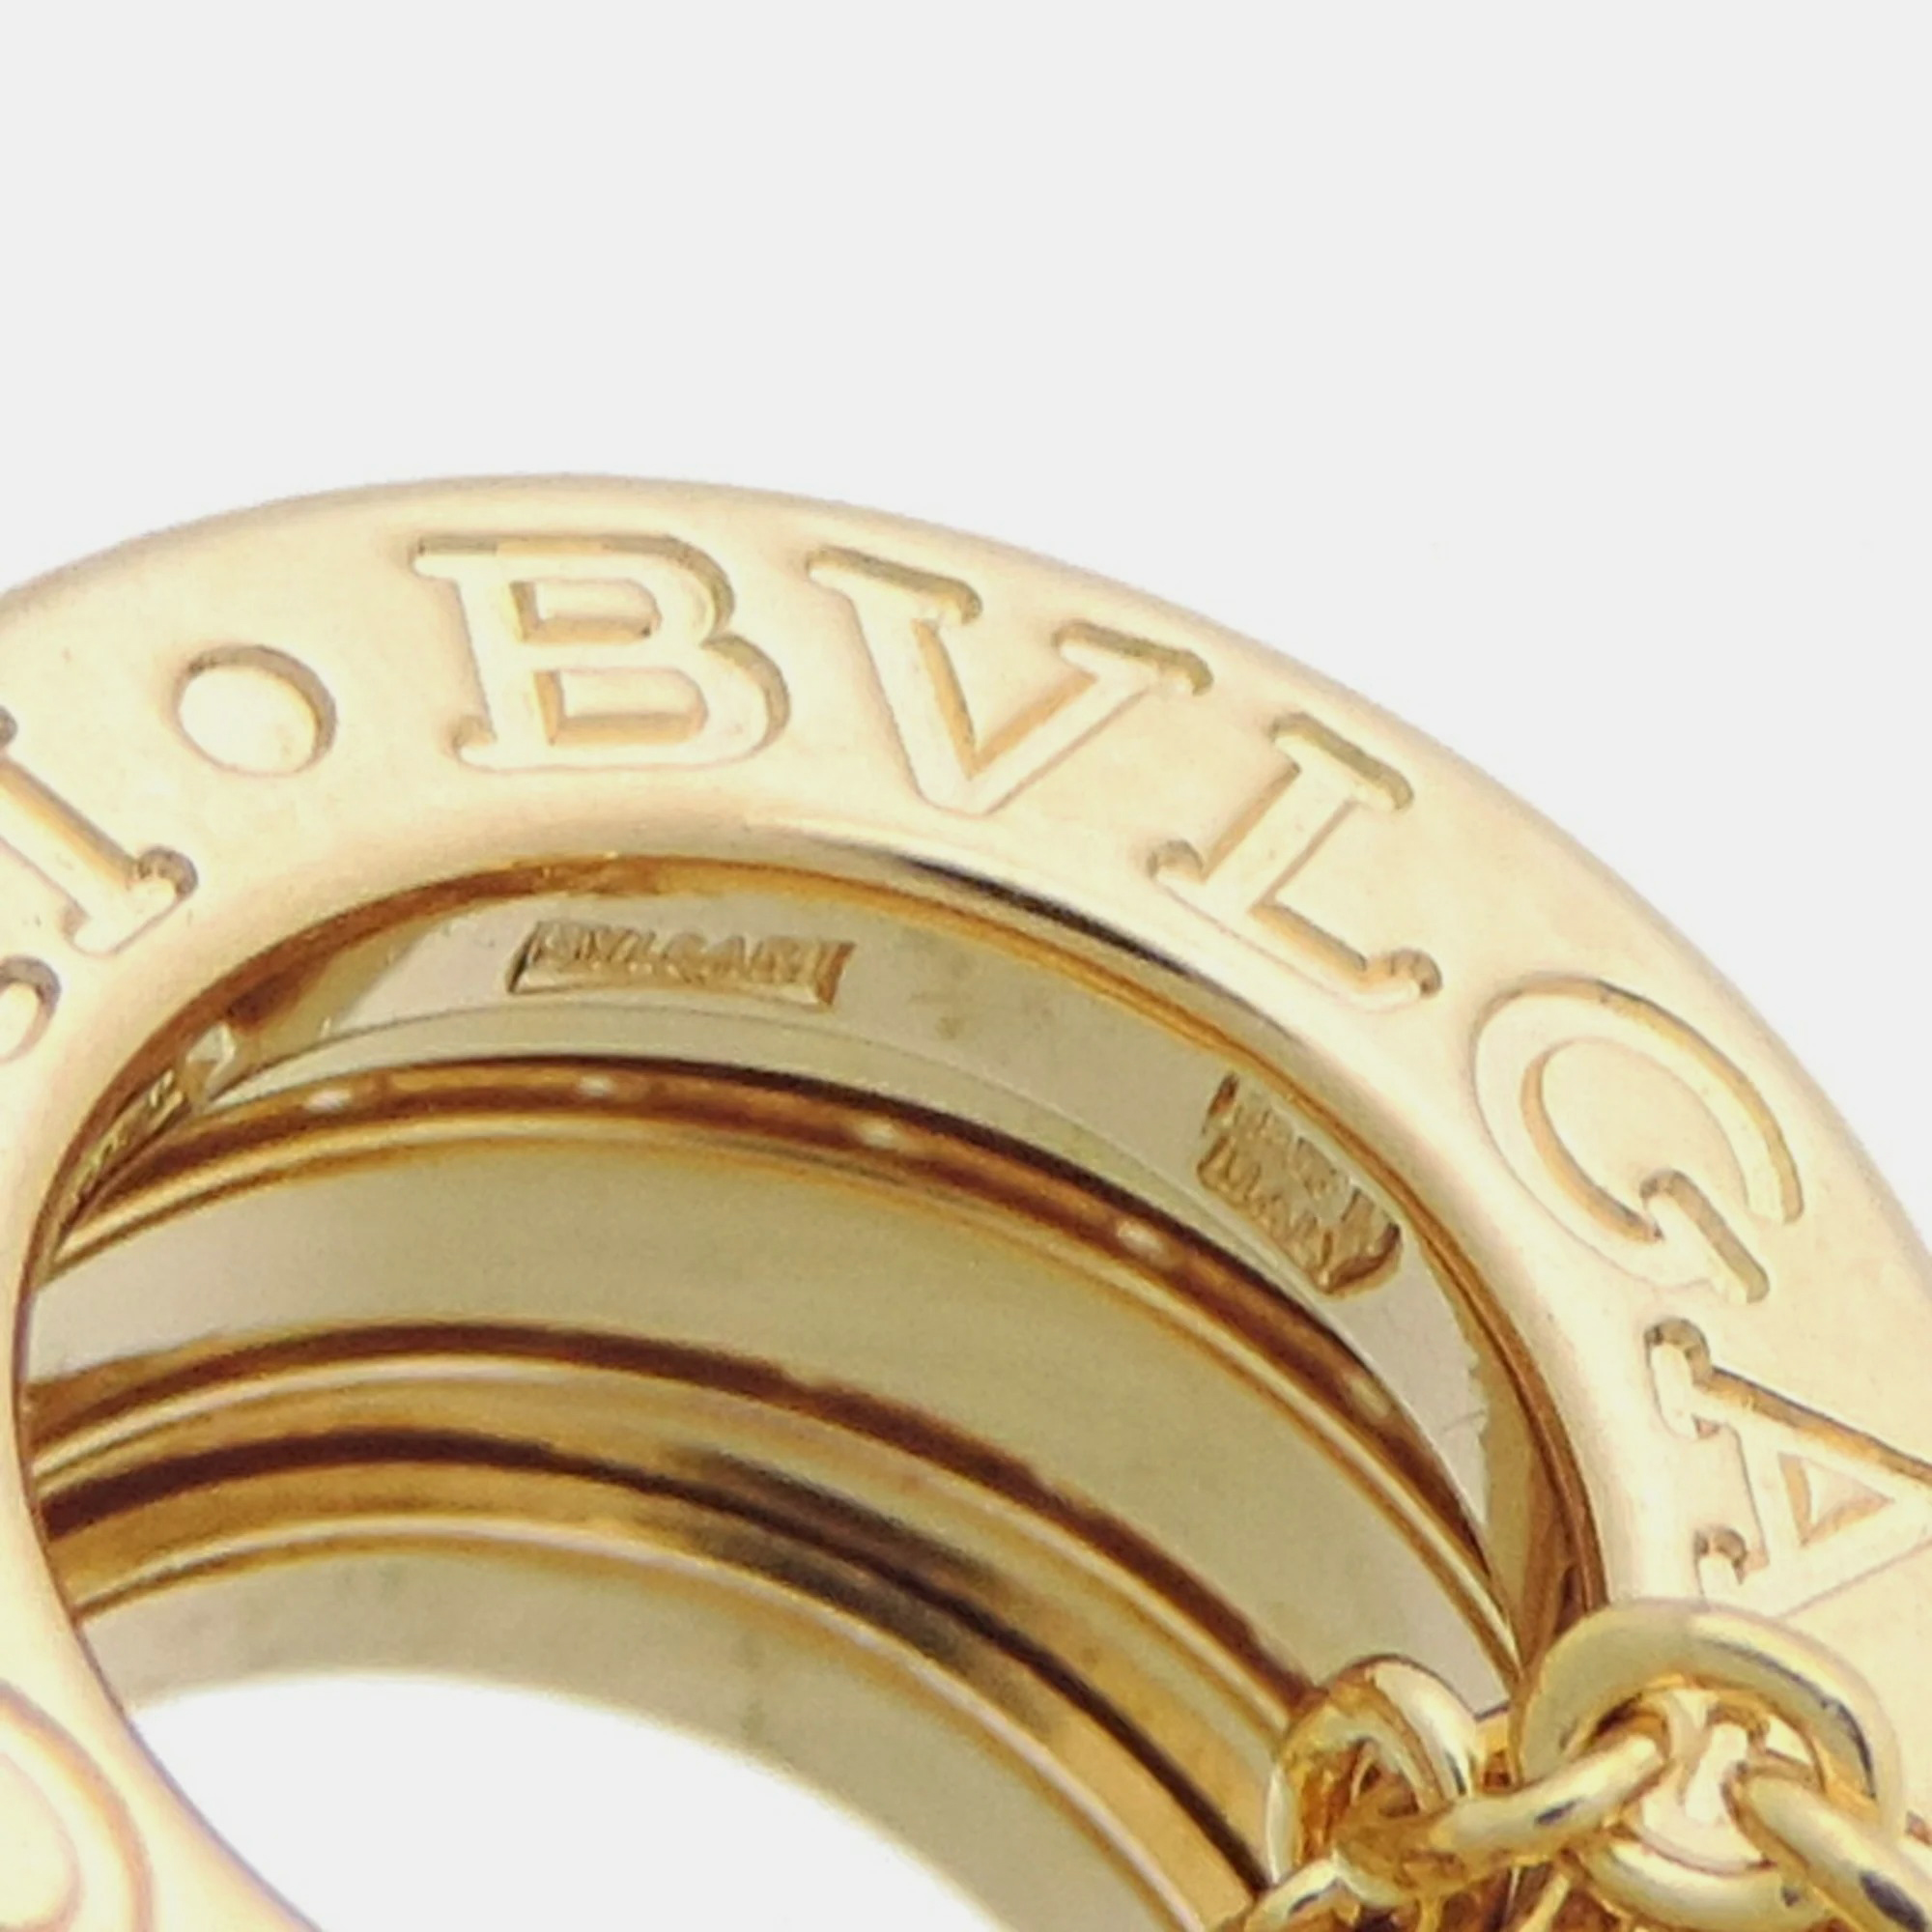 Bvlgari B.Zero1 18K Yellow Gold Diamond Necklace